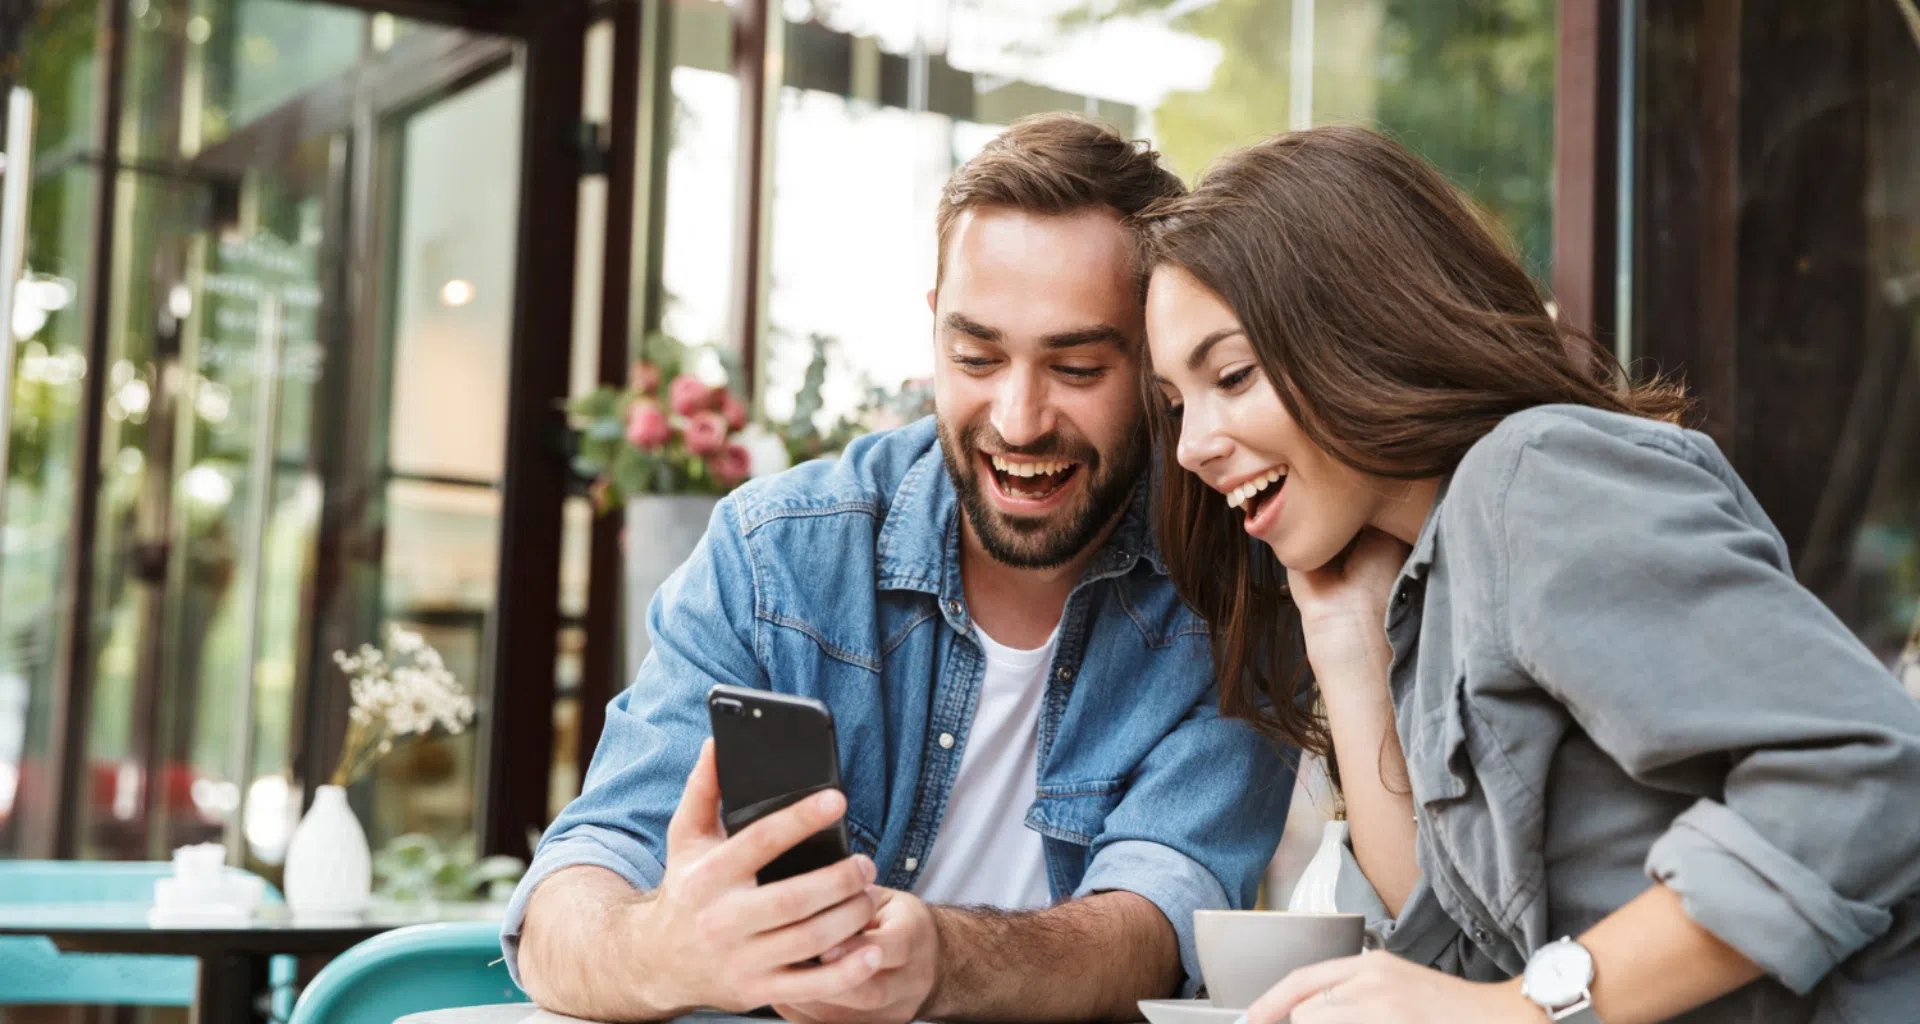 10 apps para casais que você precisa conhecer no dia dos namorados. Encontre aplicativos para melhorar o relacionamento, ter novas experiências e aproveitar o dia dos namorados de forma especial